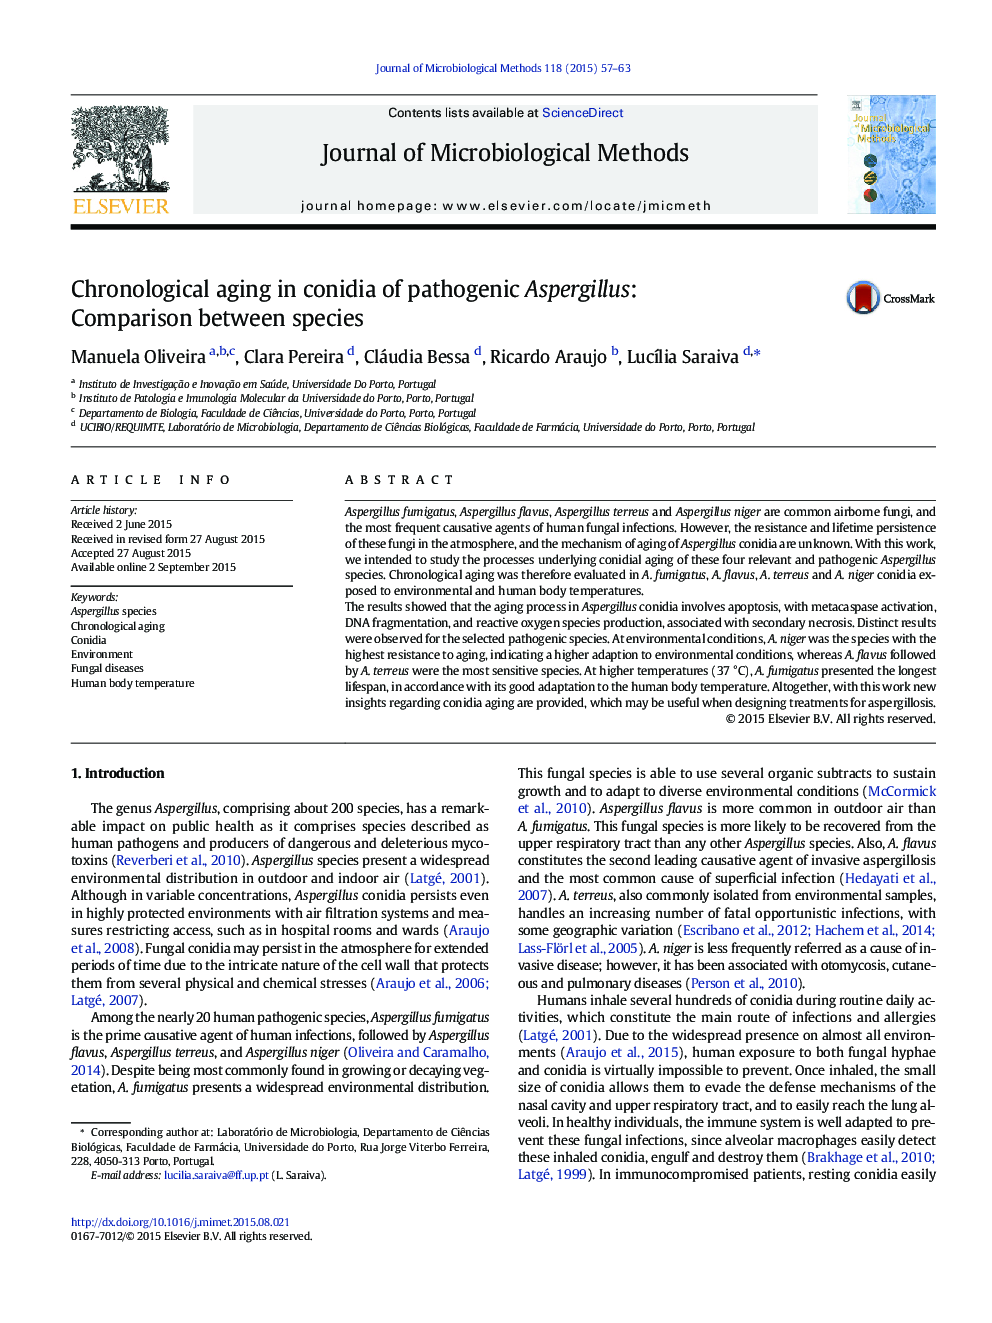 Chronological aging in conidia of pathogenic Aspergillus: Comparison between species